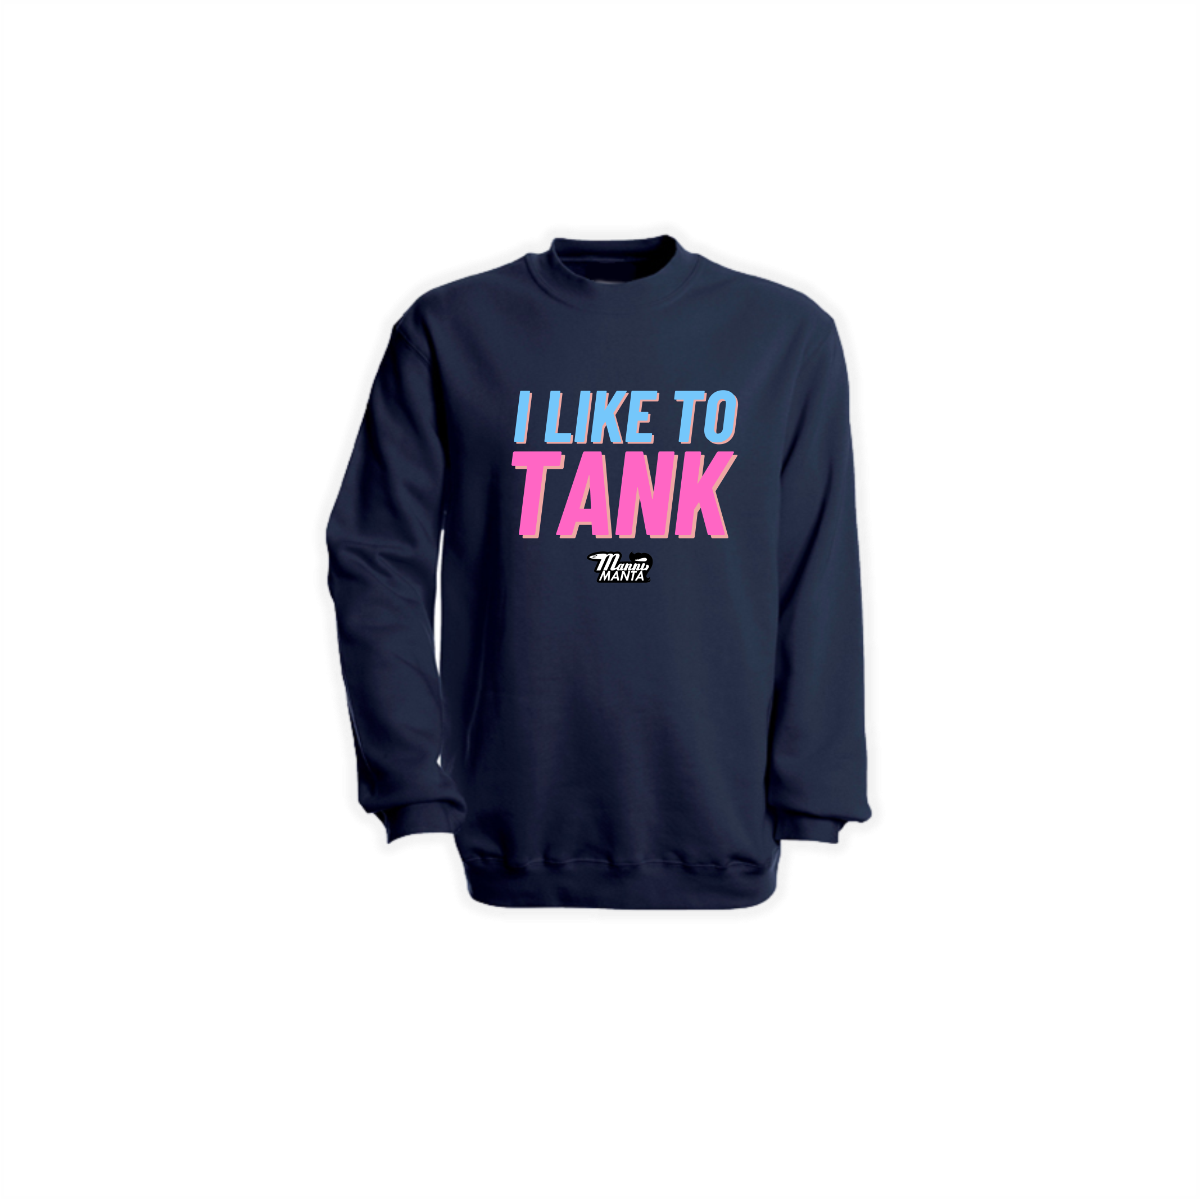 Sweat-Shirt "I LIKE TO TANK" dunkelblau